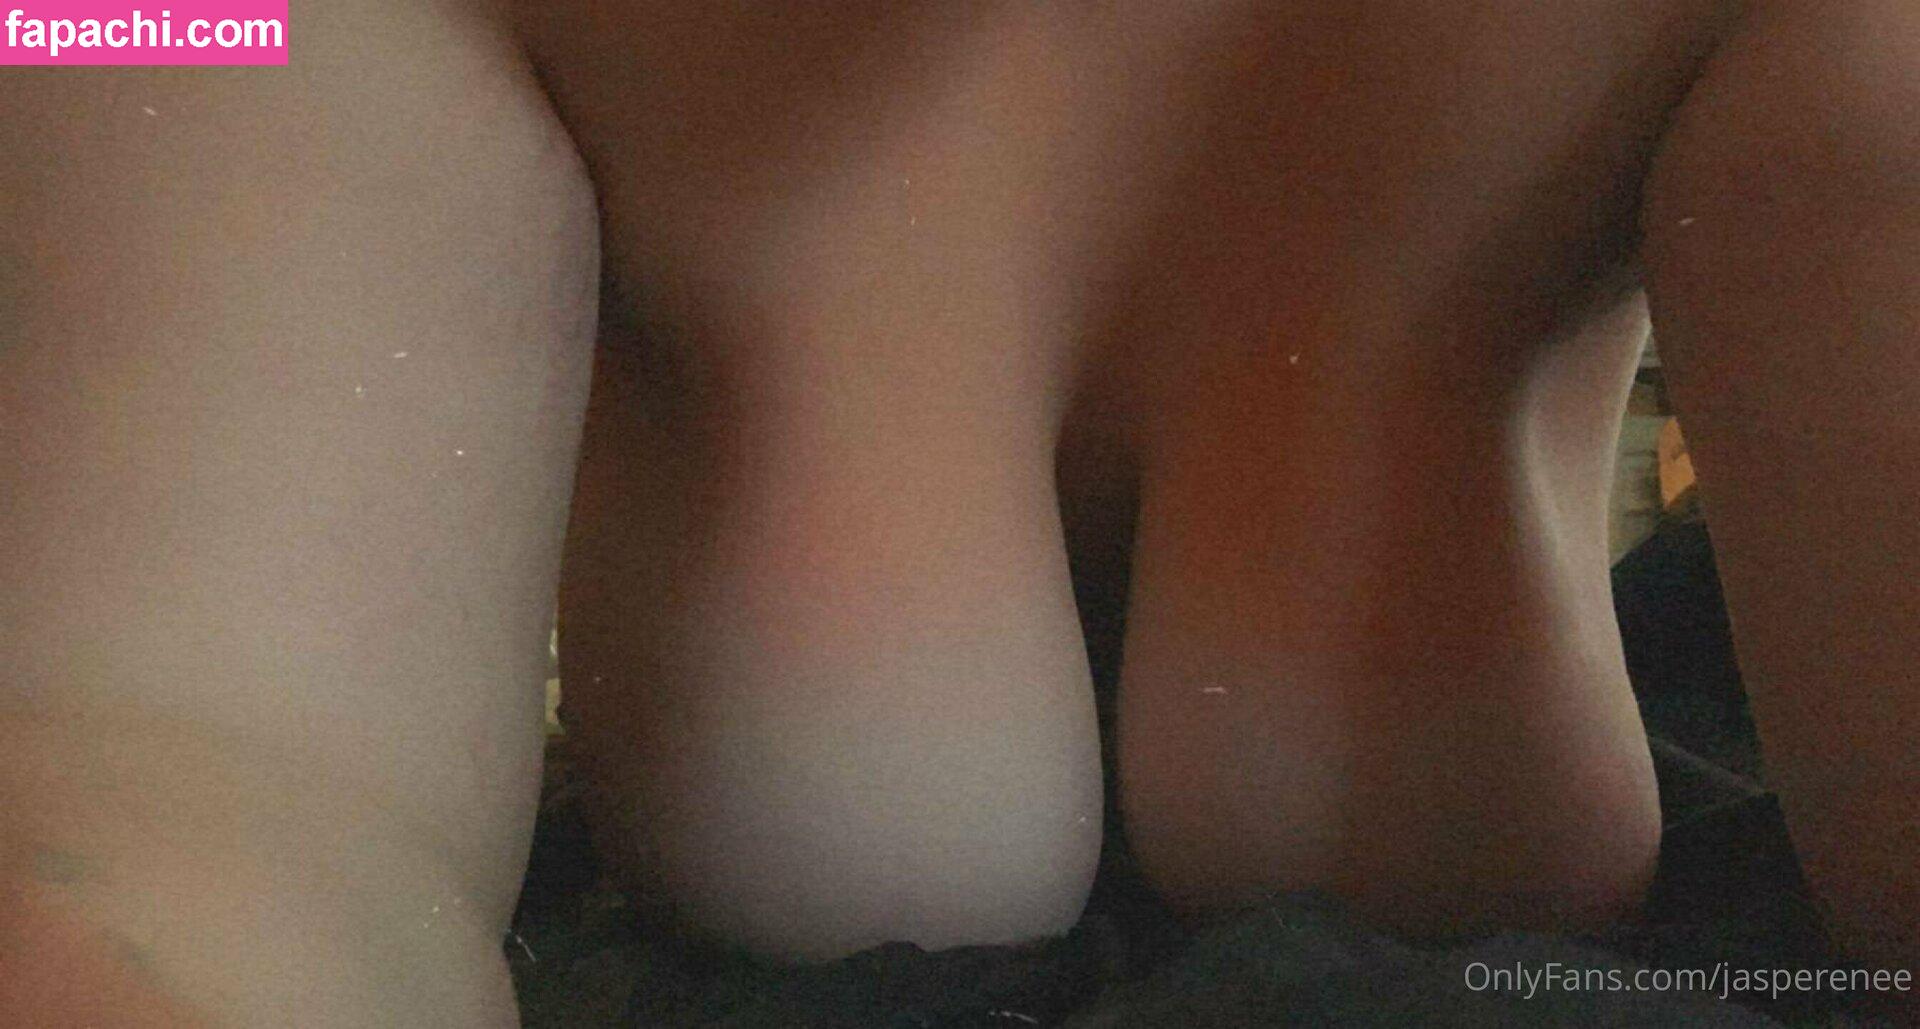 ja_renee / jarenee69 leaked nude photo #0027 from OnlyFans/Patreon